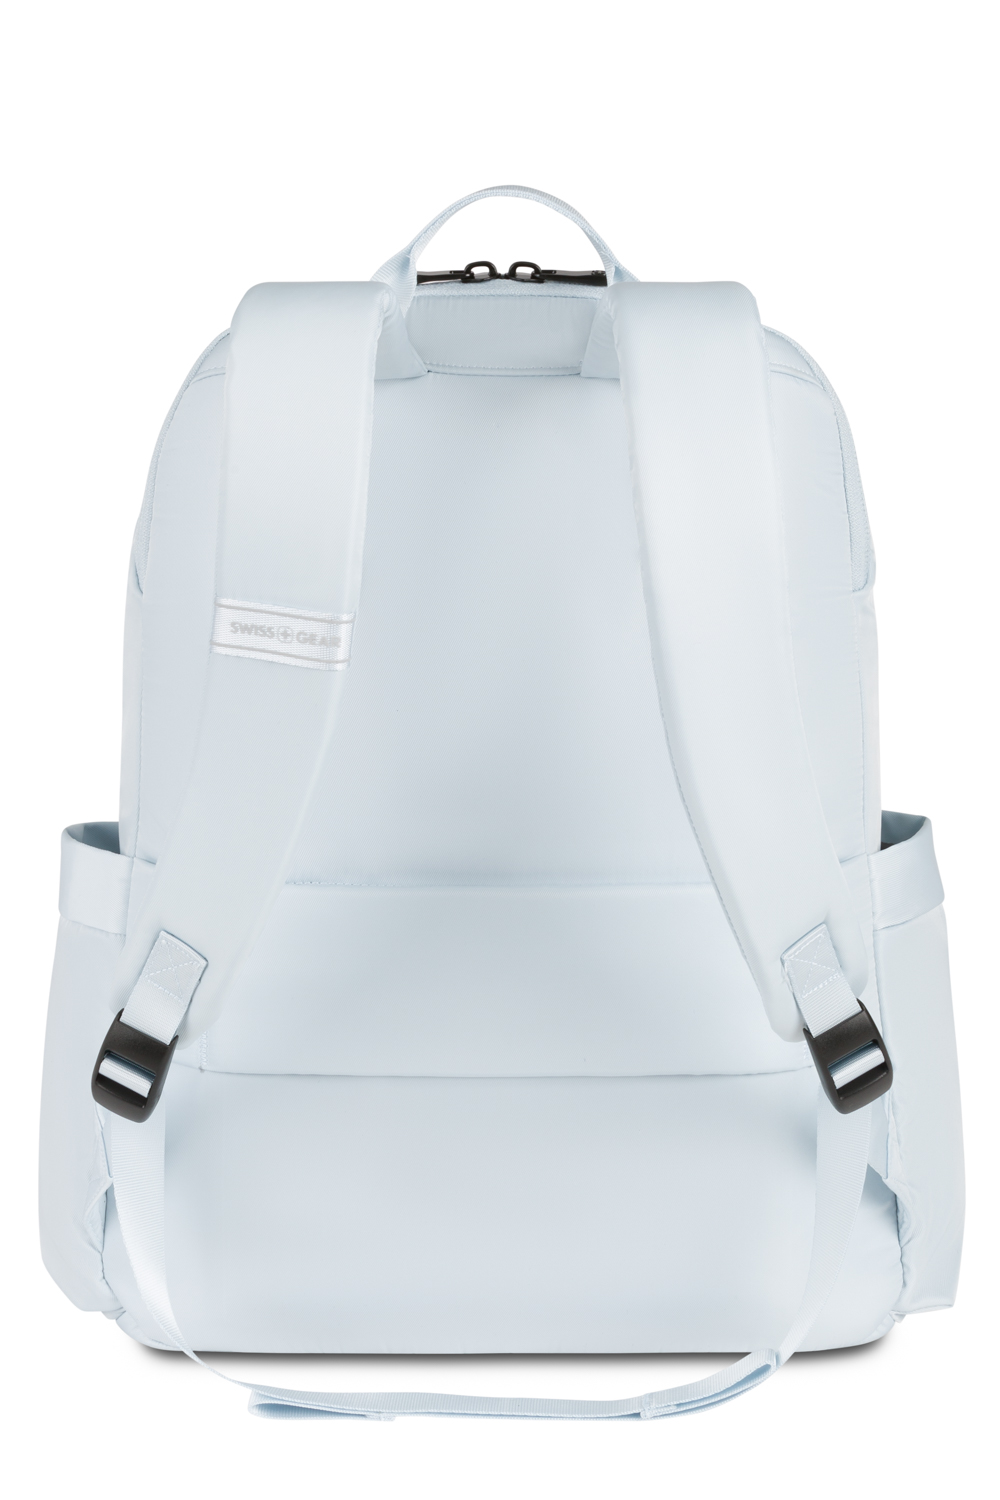 Swissgear 2822 Laptop Backpack - Pastel Blue